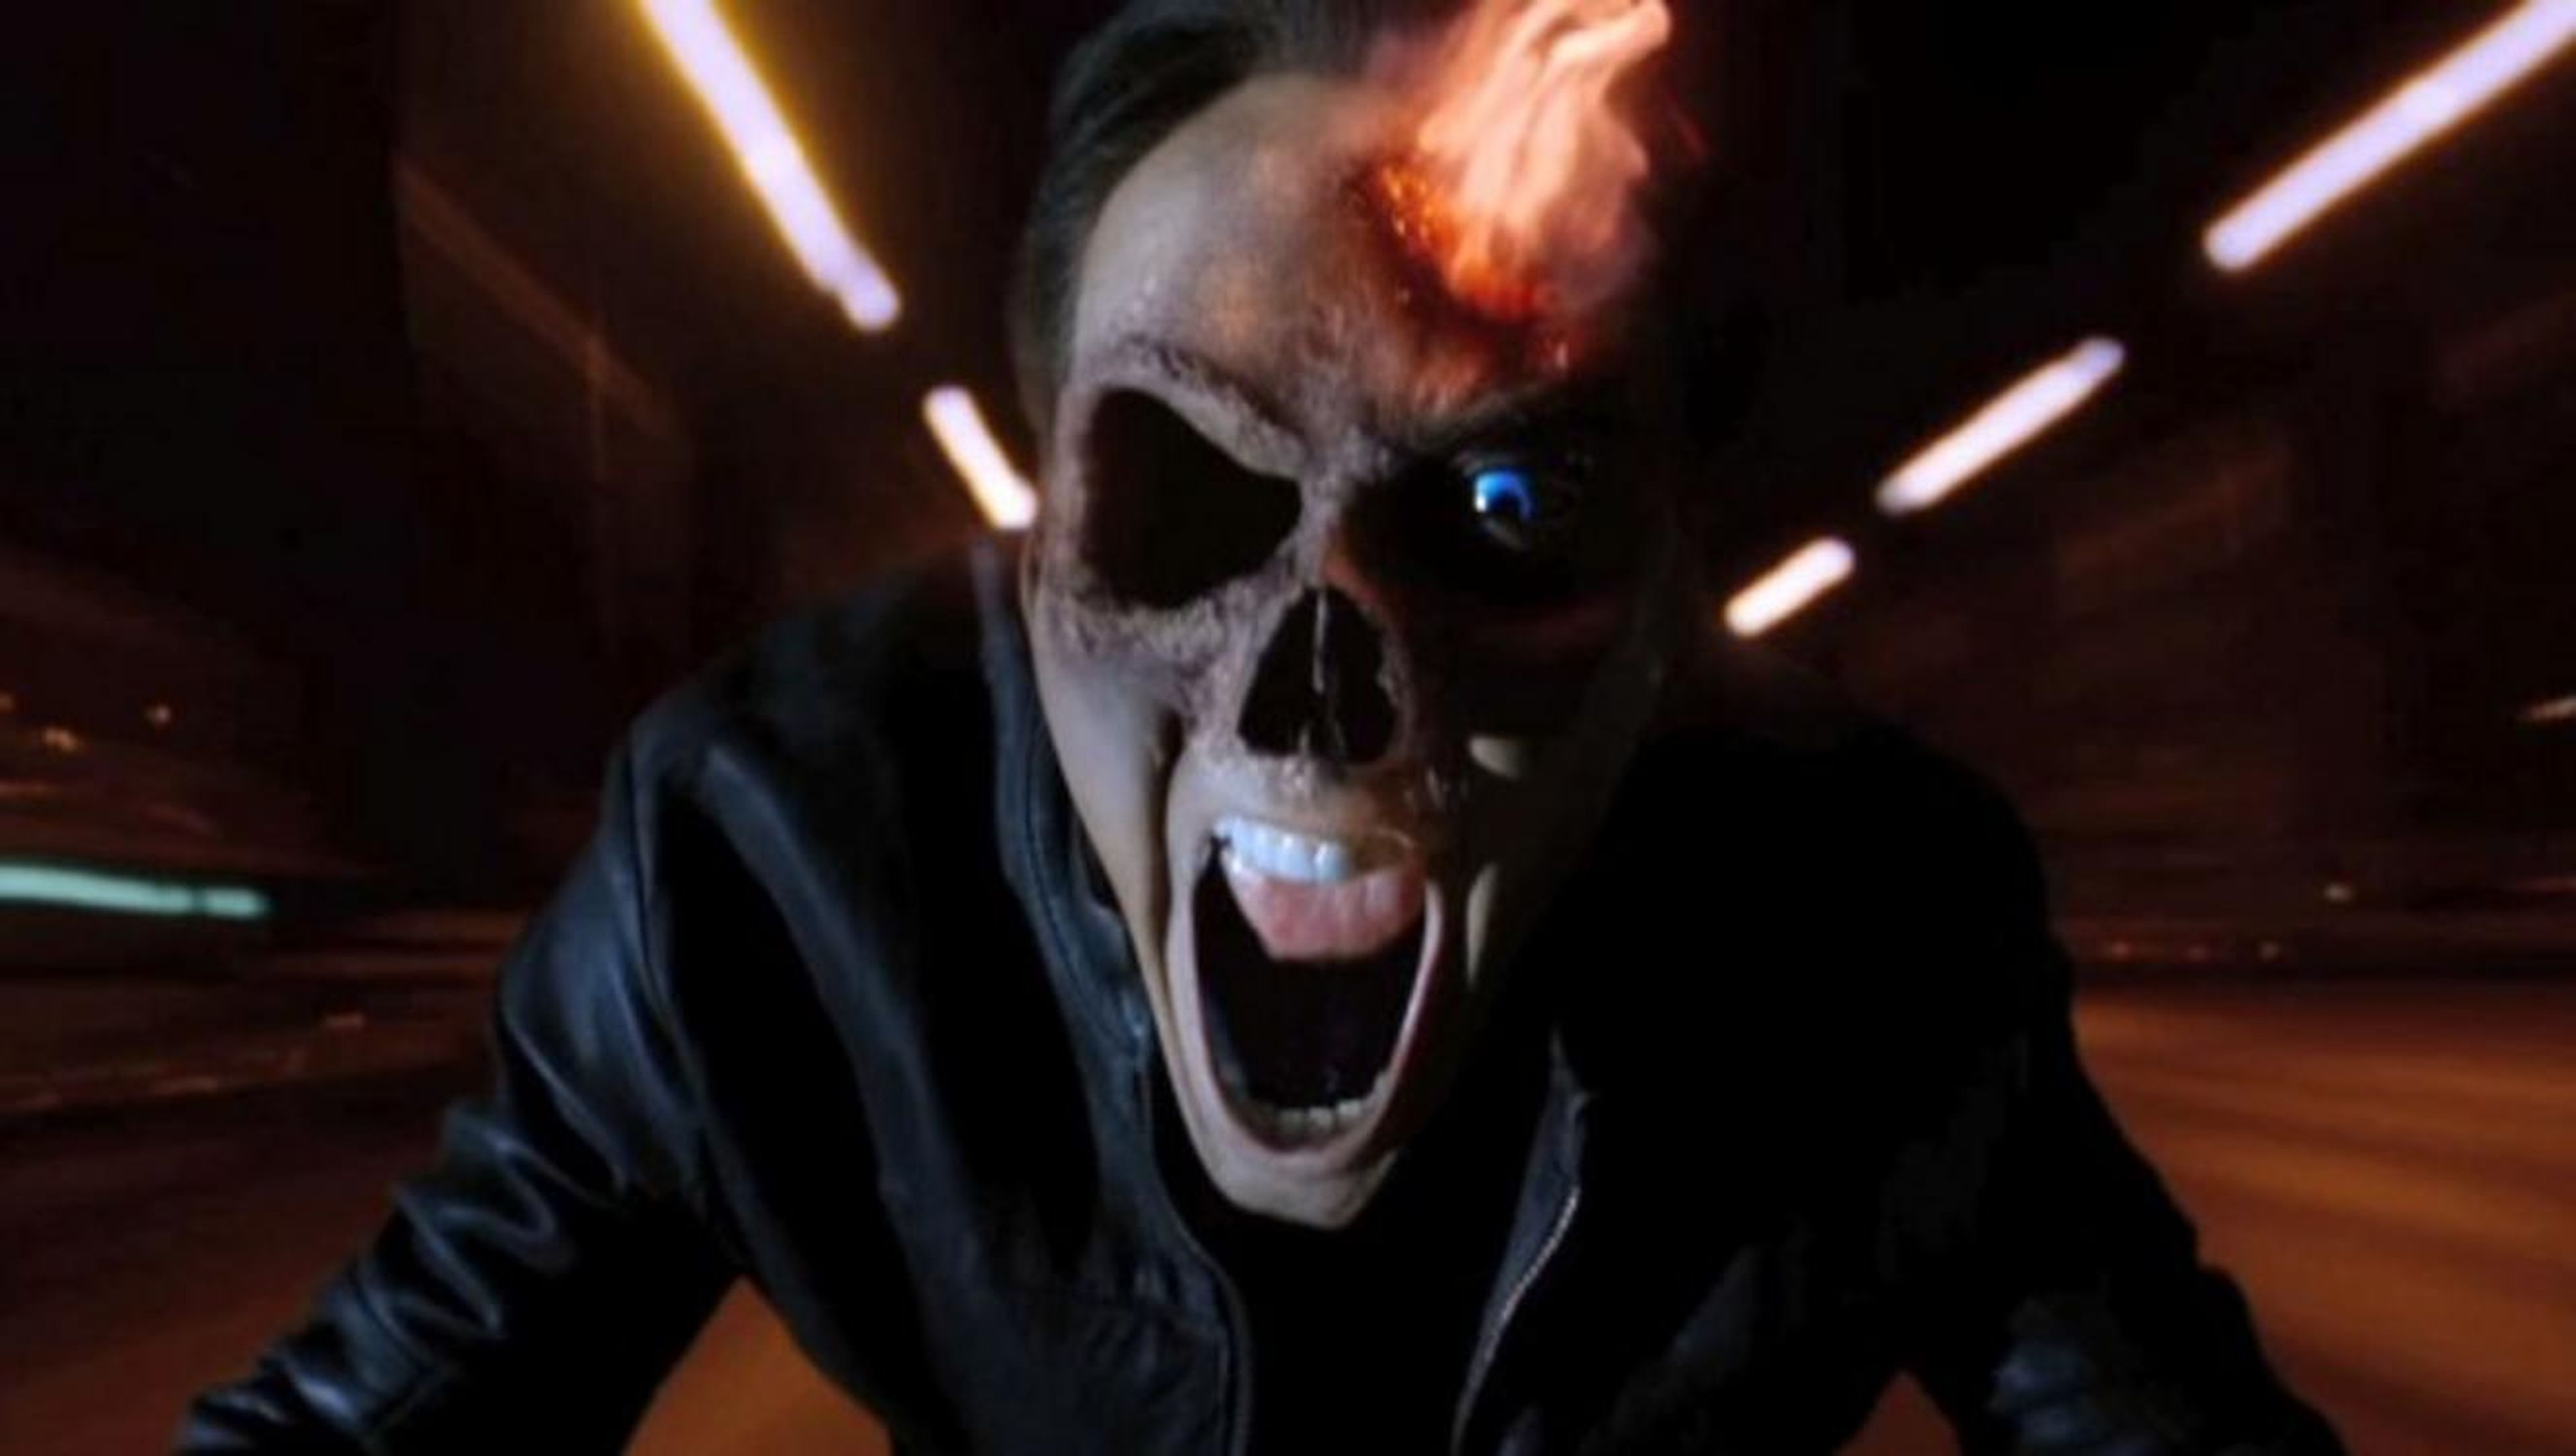 Cine de superhéroes: Ghost Rider, espíritu de venganza